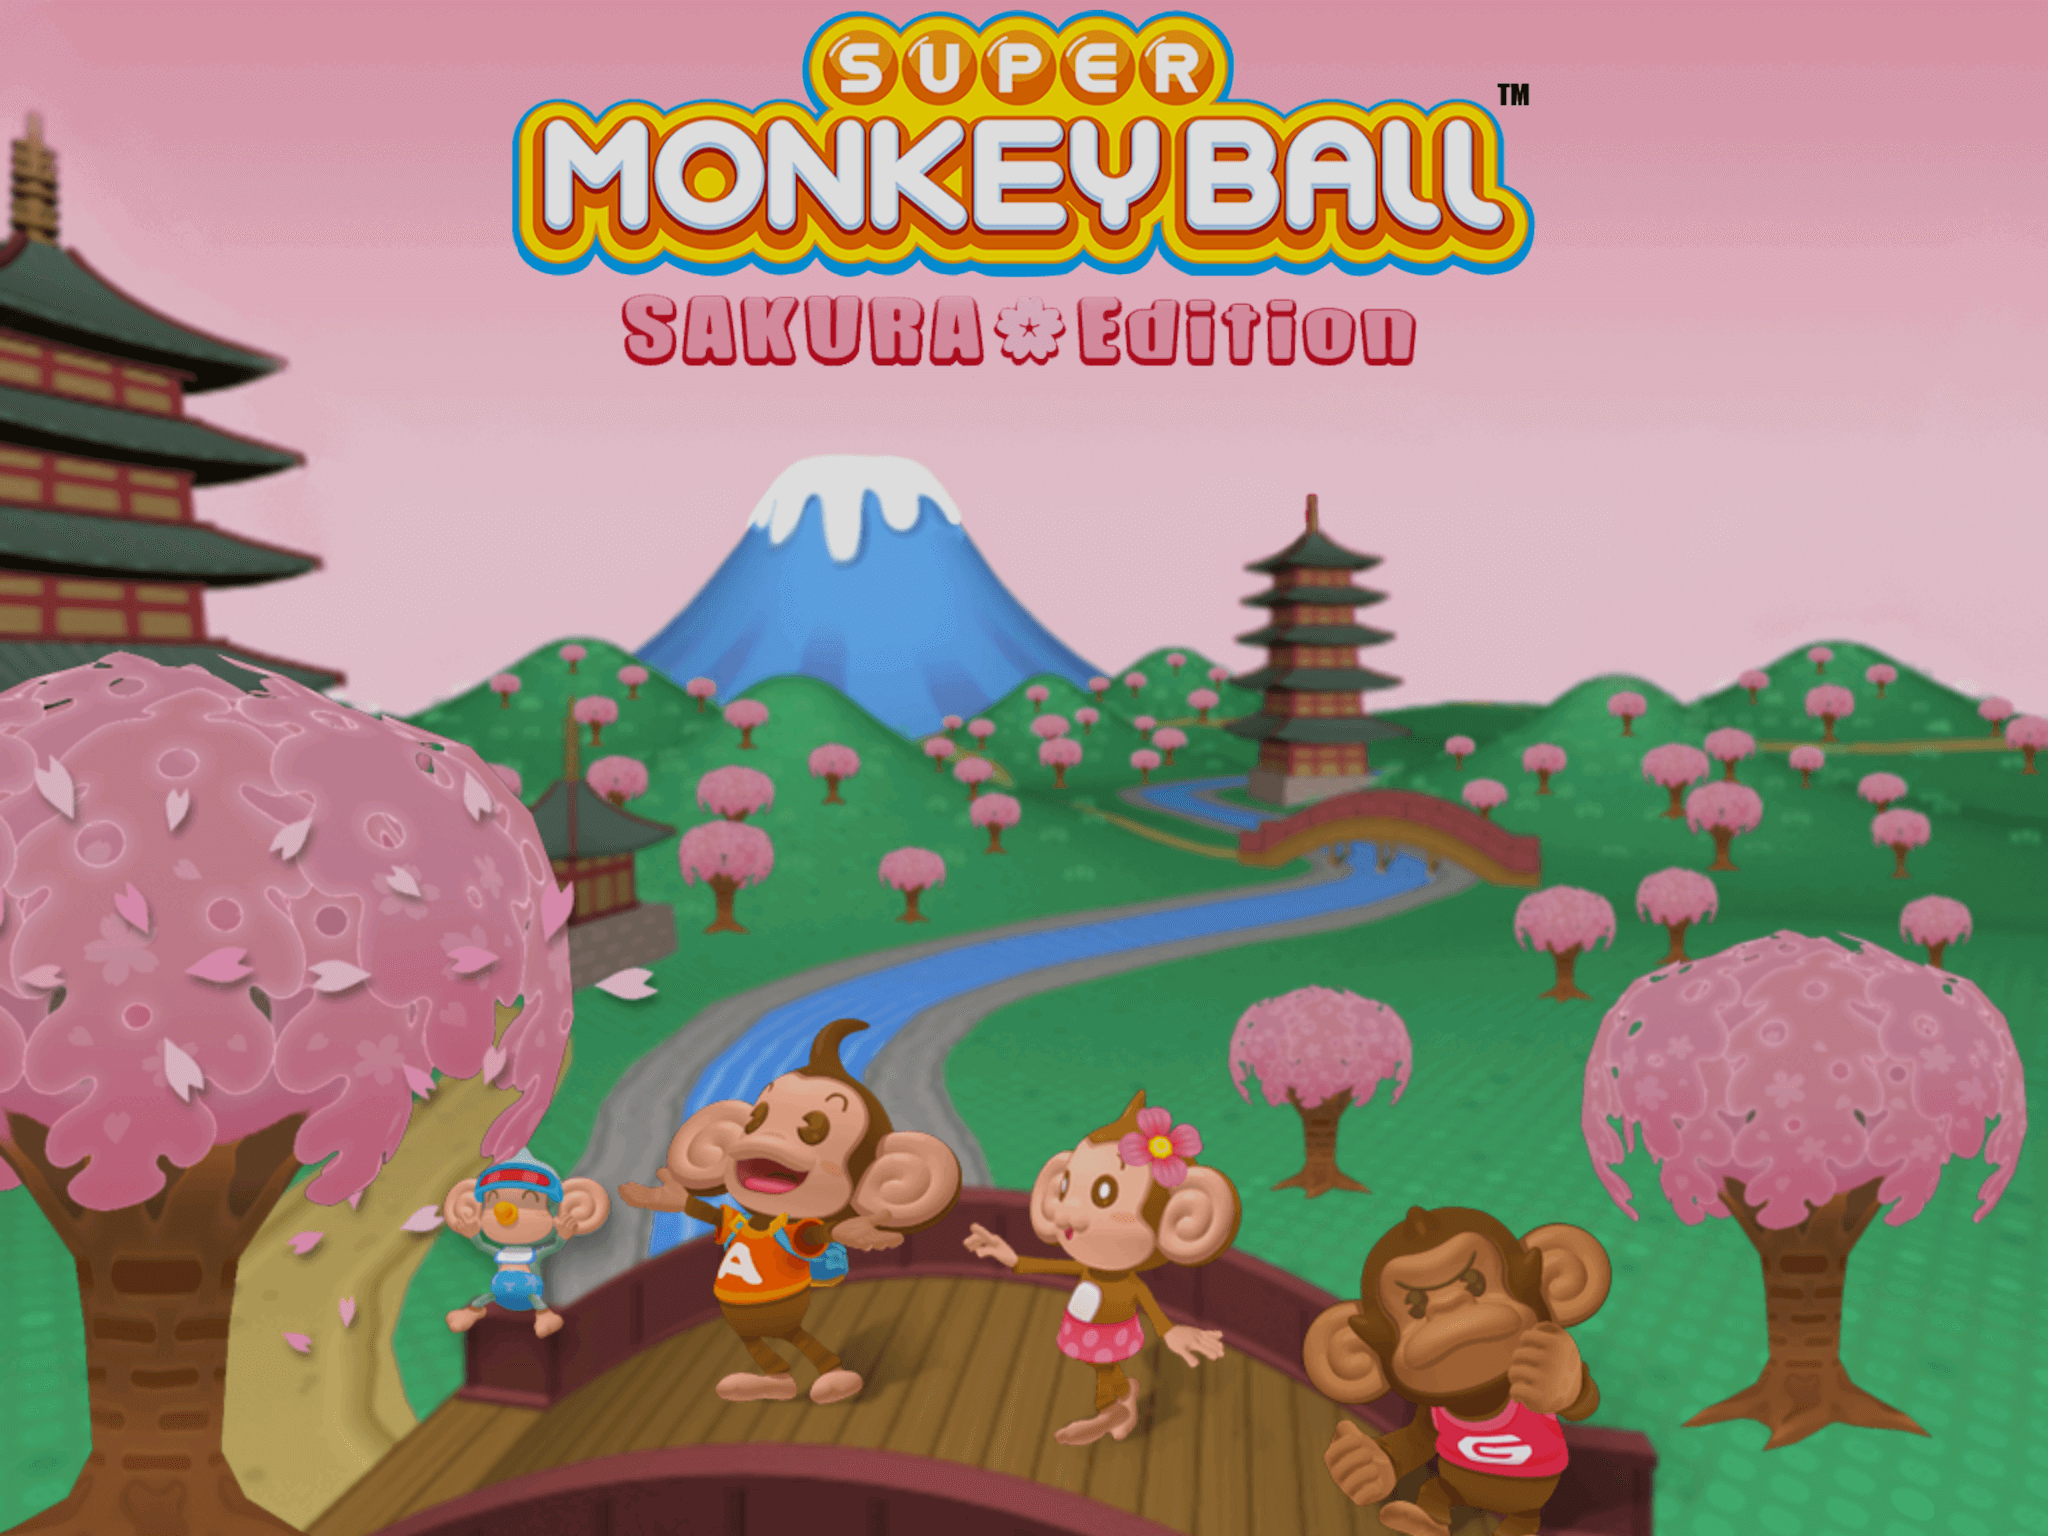 Super Monkey Ball: Sakura Edition, ya disponible en iOS y Android